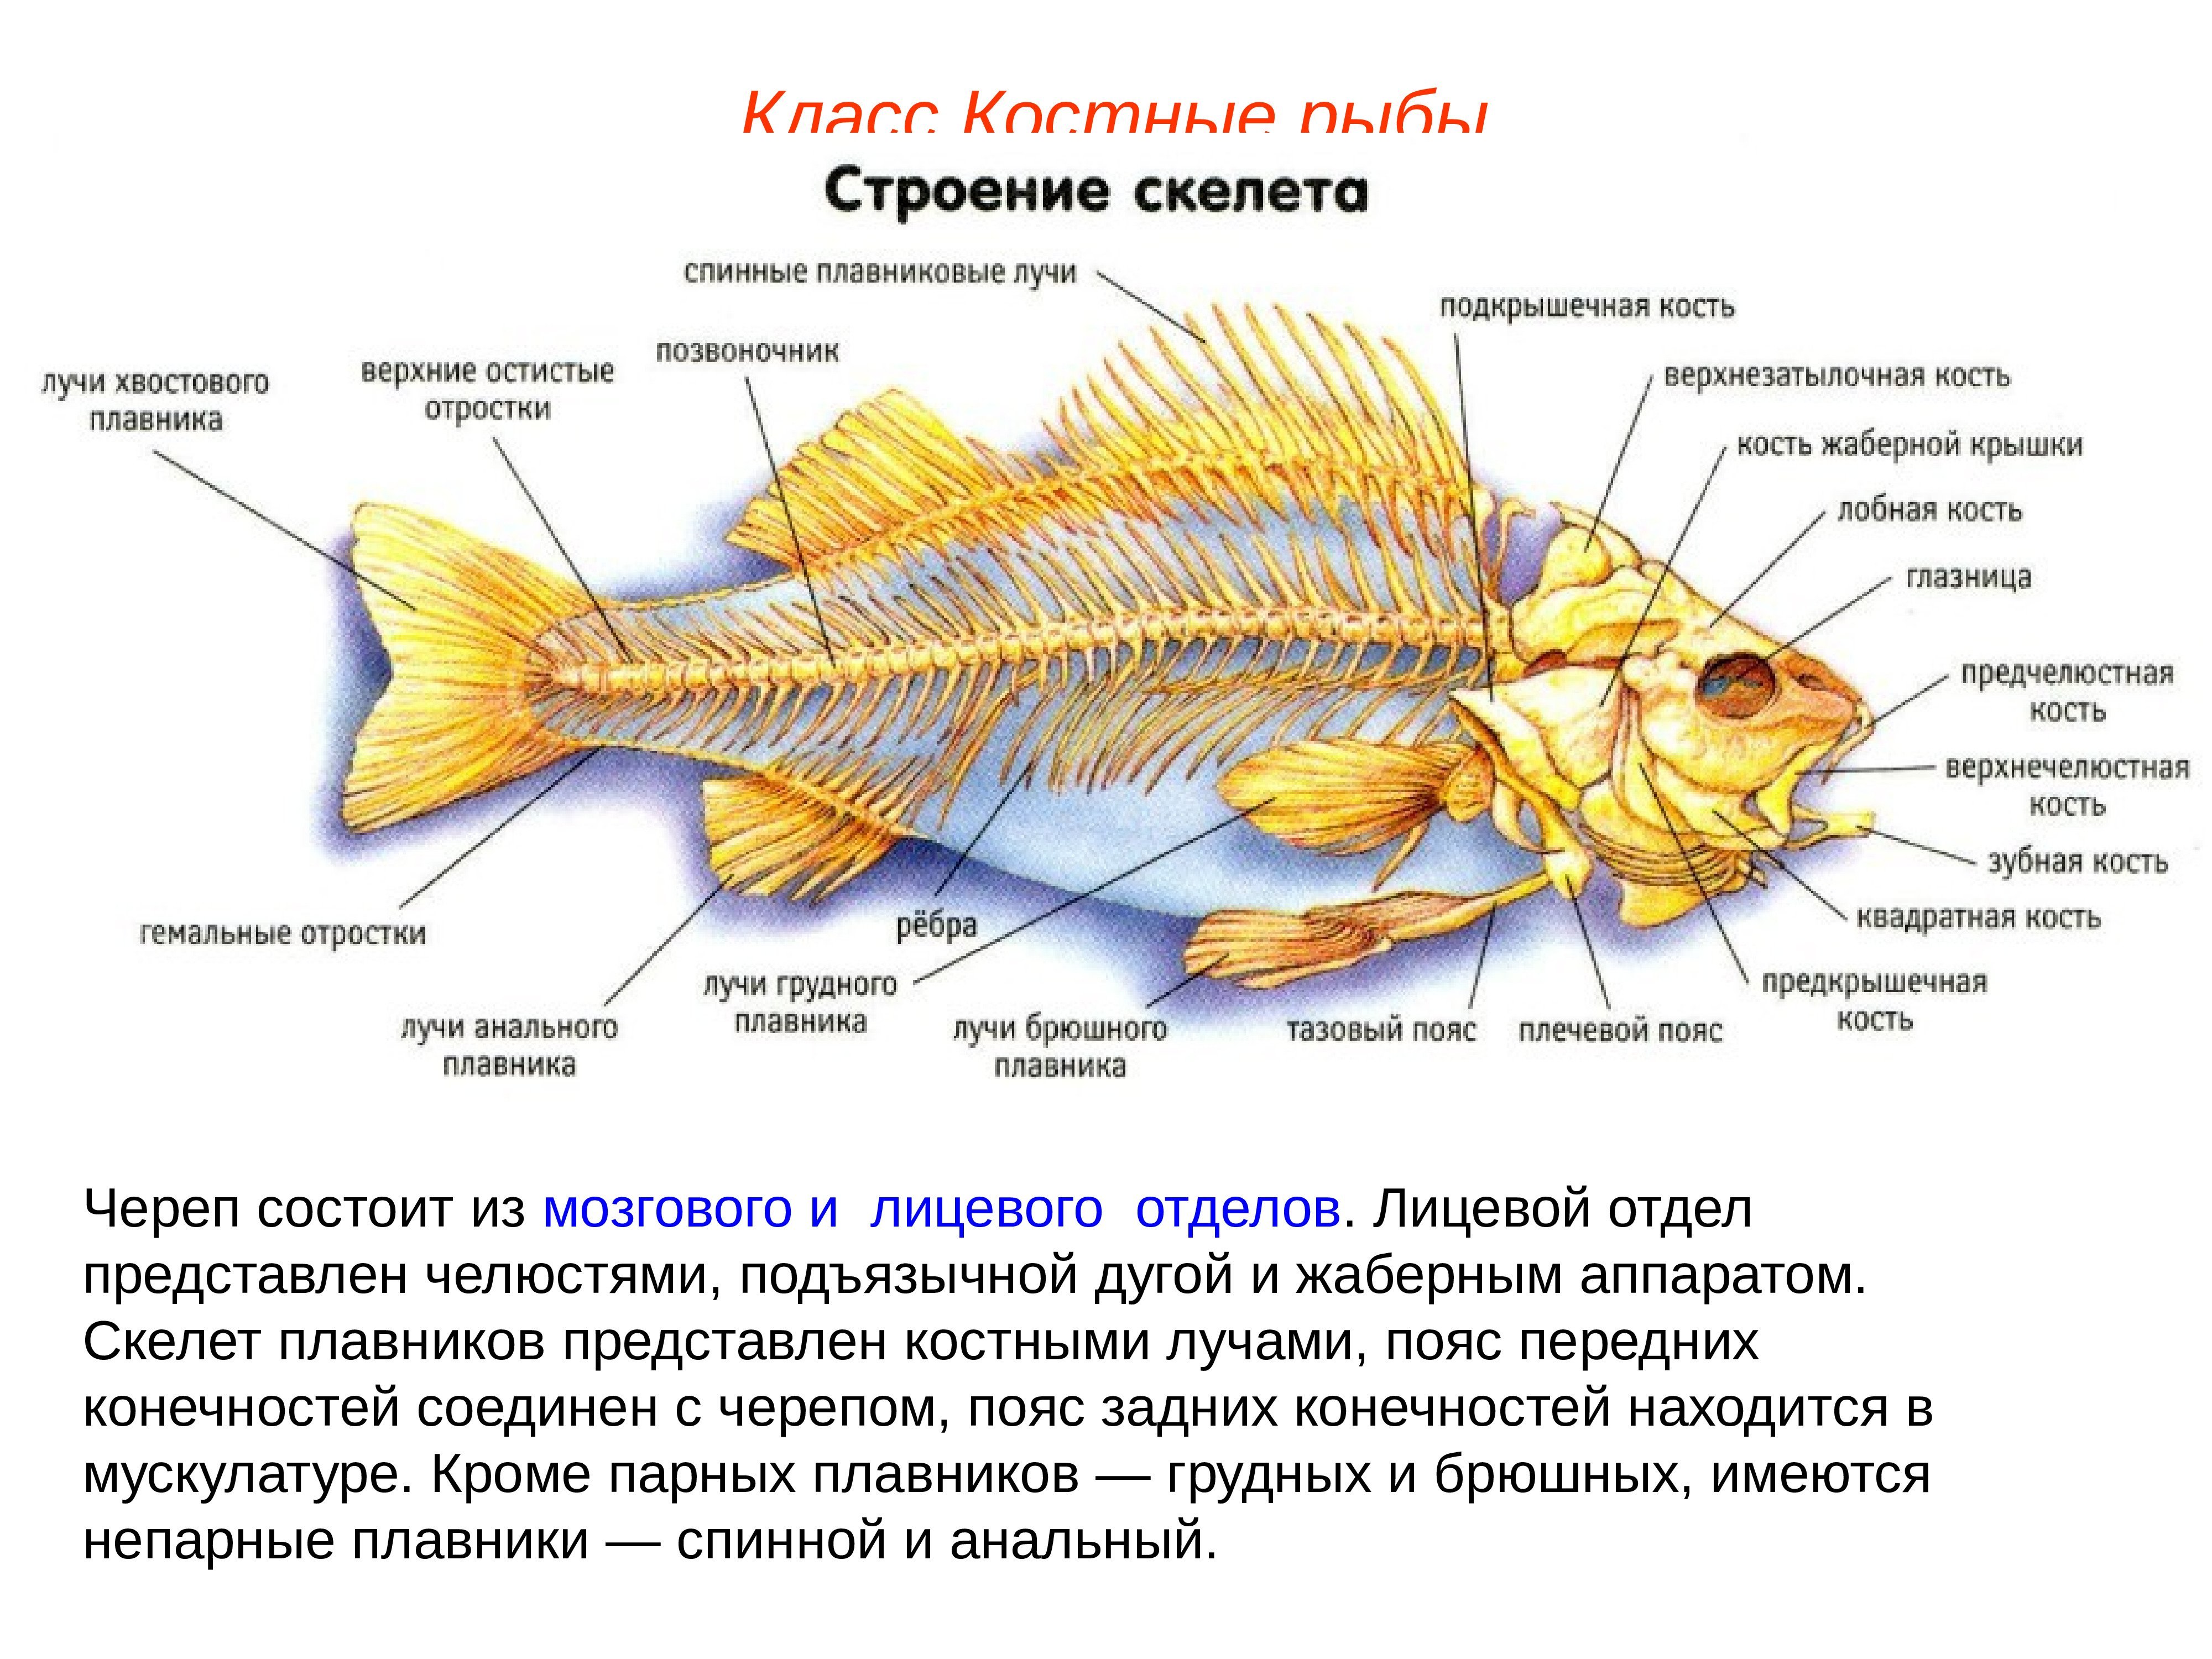 Скелет рыб 7 класс. Скелет Надкласс рыбы. Надкласс рыбы отделы скелета. Класс костные рыбы строение скелета. Строение костных рыб 7 класс биология.